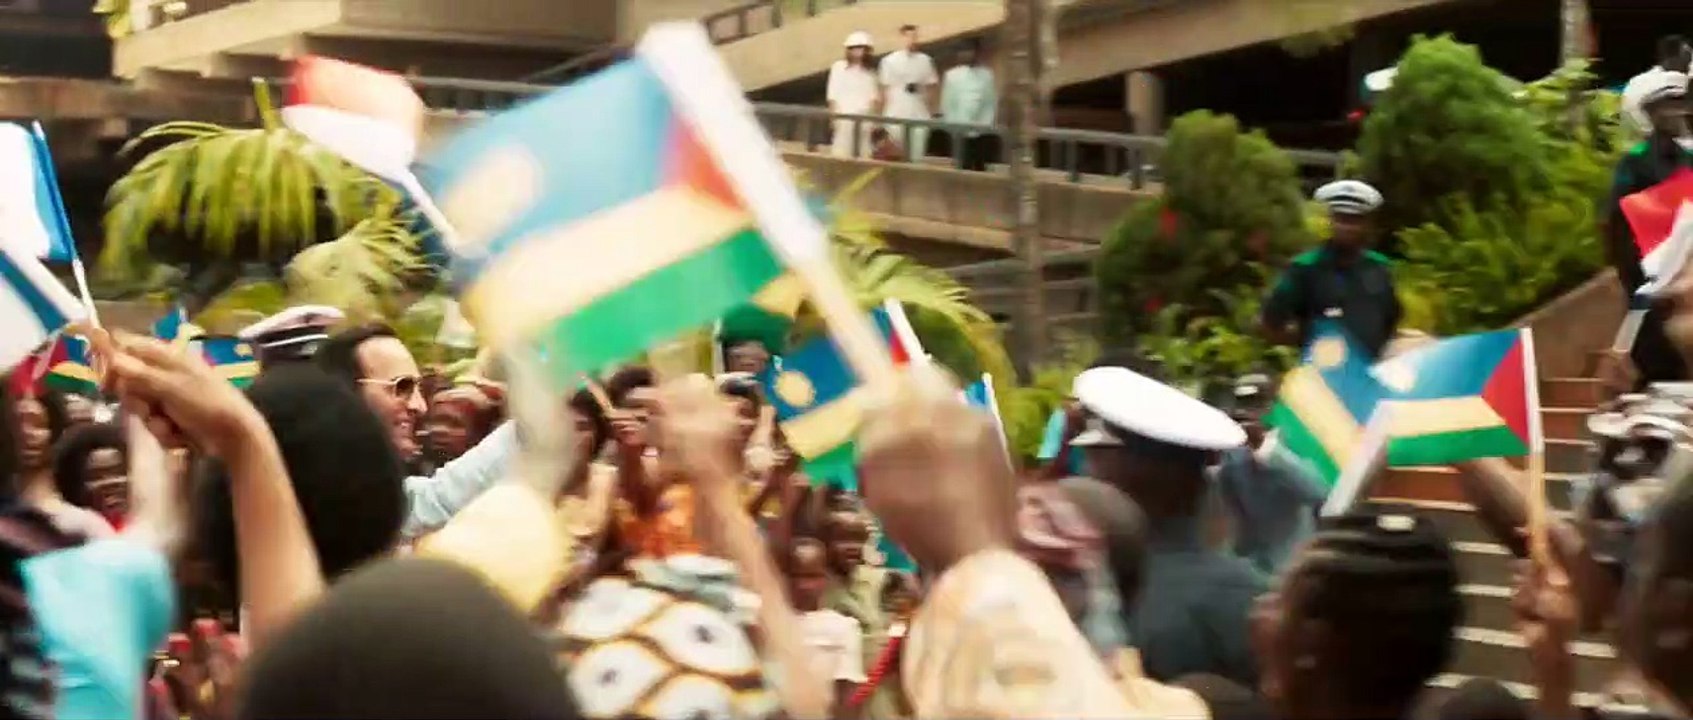 OSS 117 - Liebesgrüße aus Afrika Trailer DF